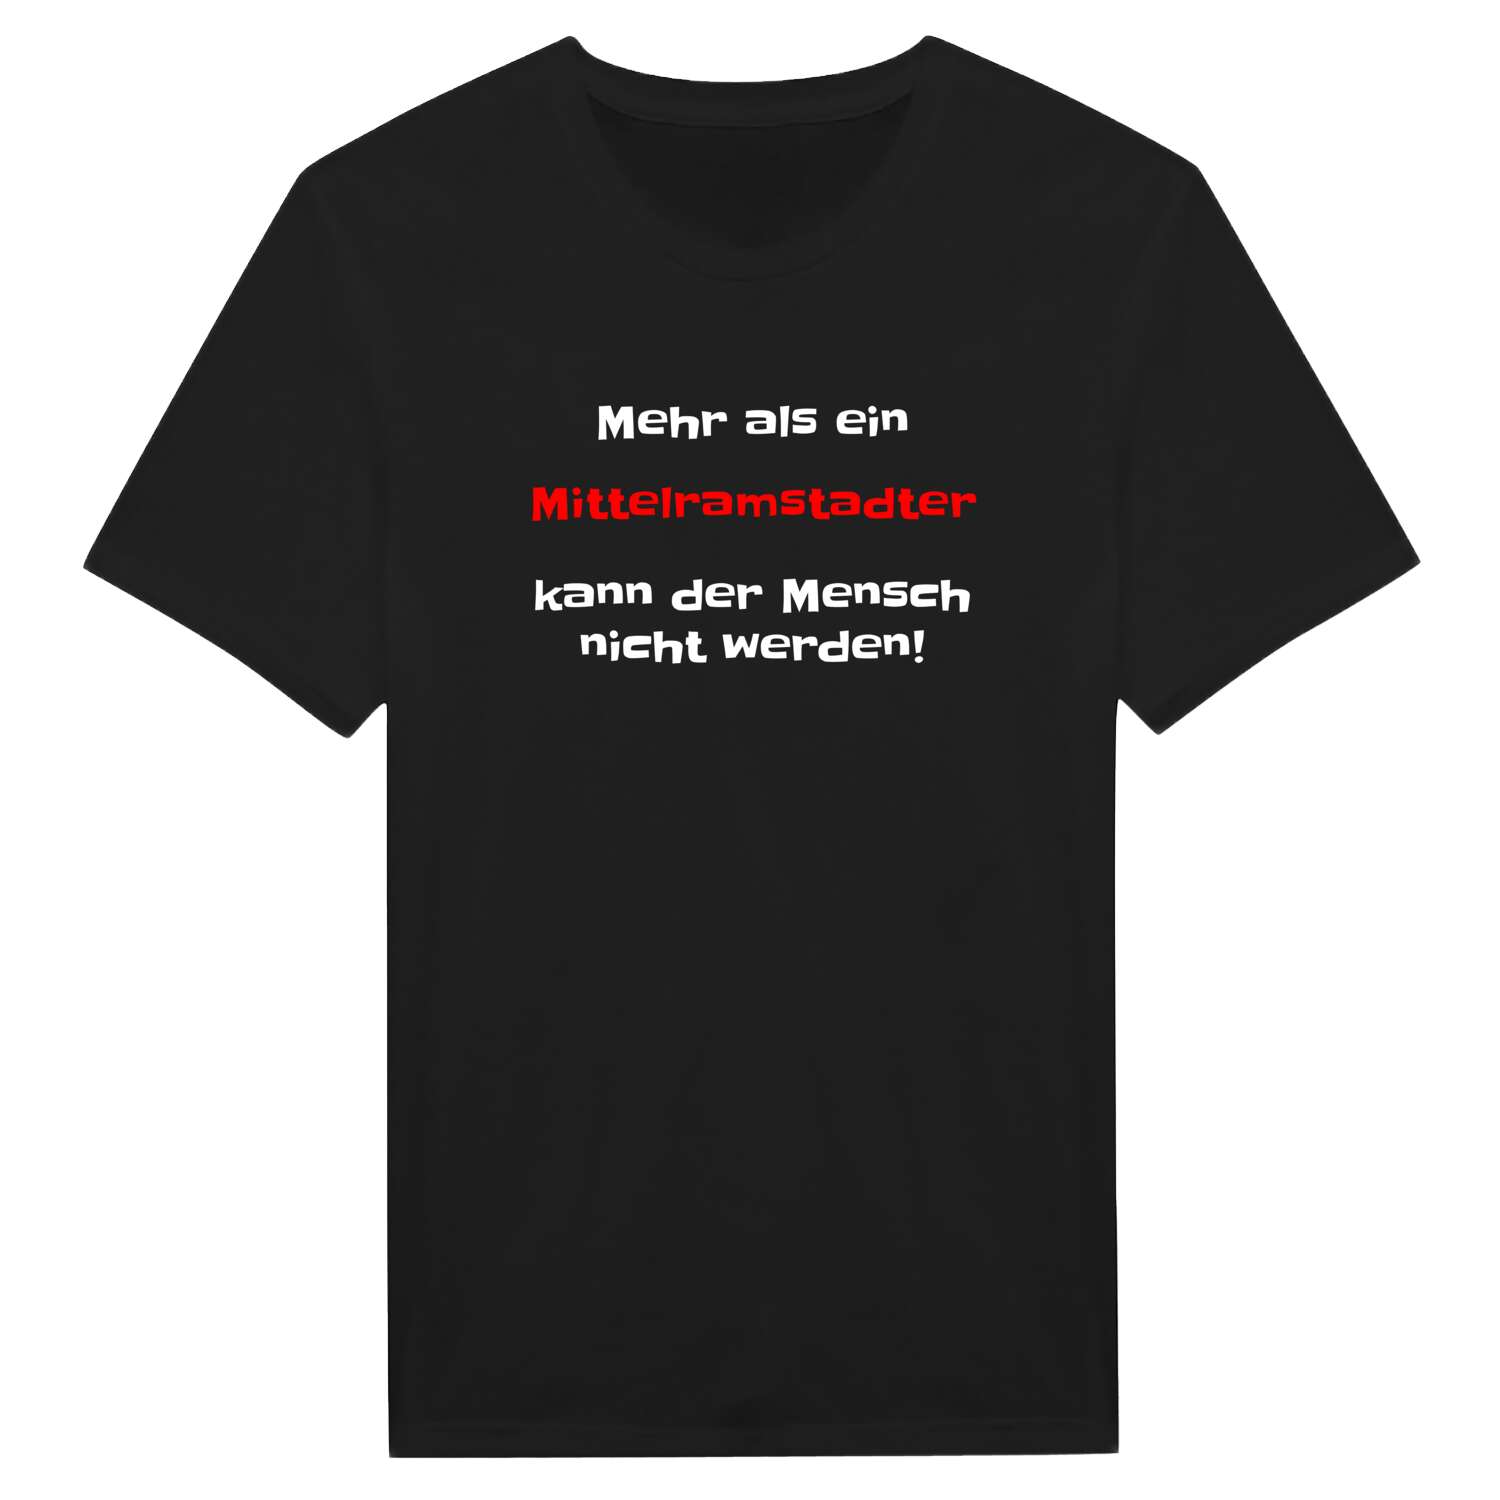 Mittelramstadt T-Shirt »Mehr als ein«